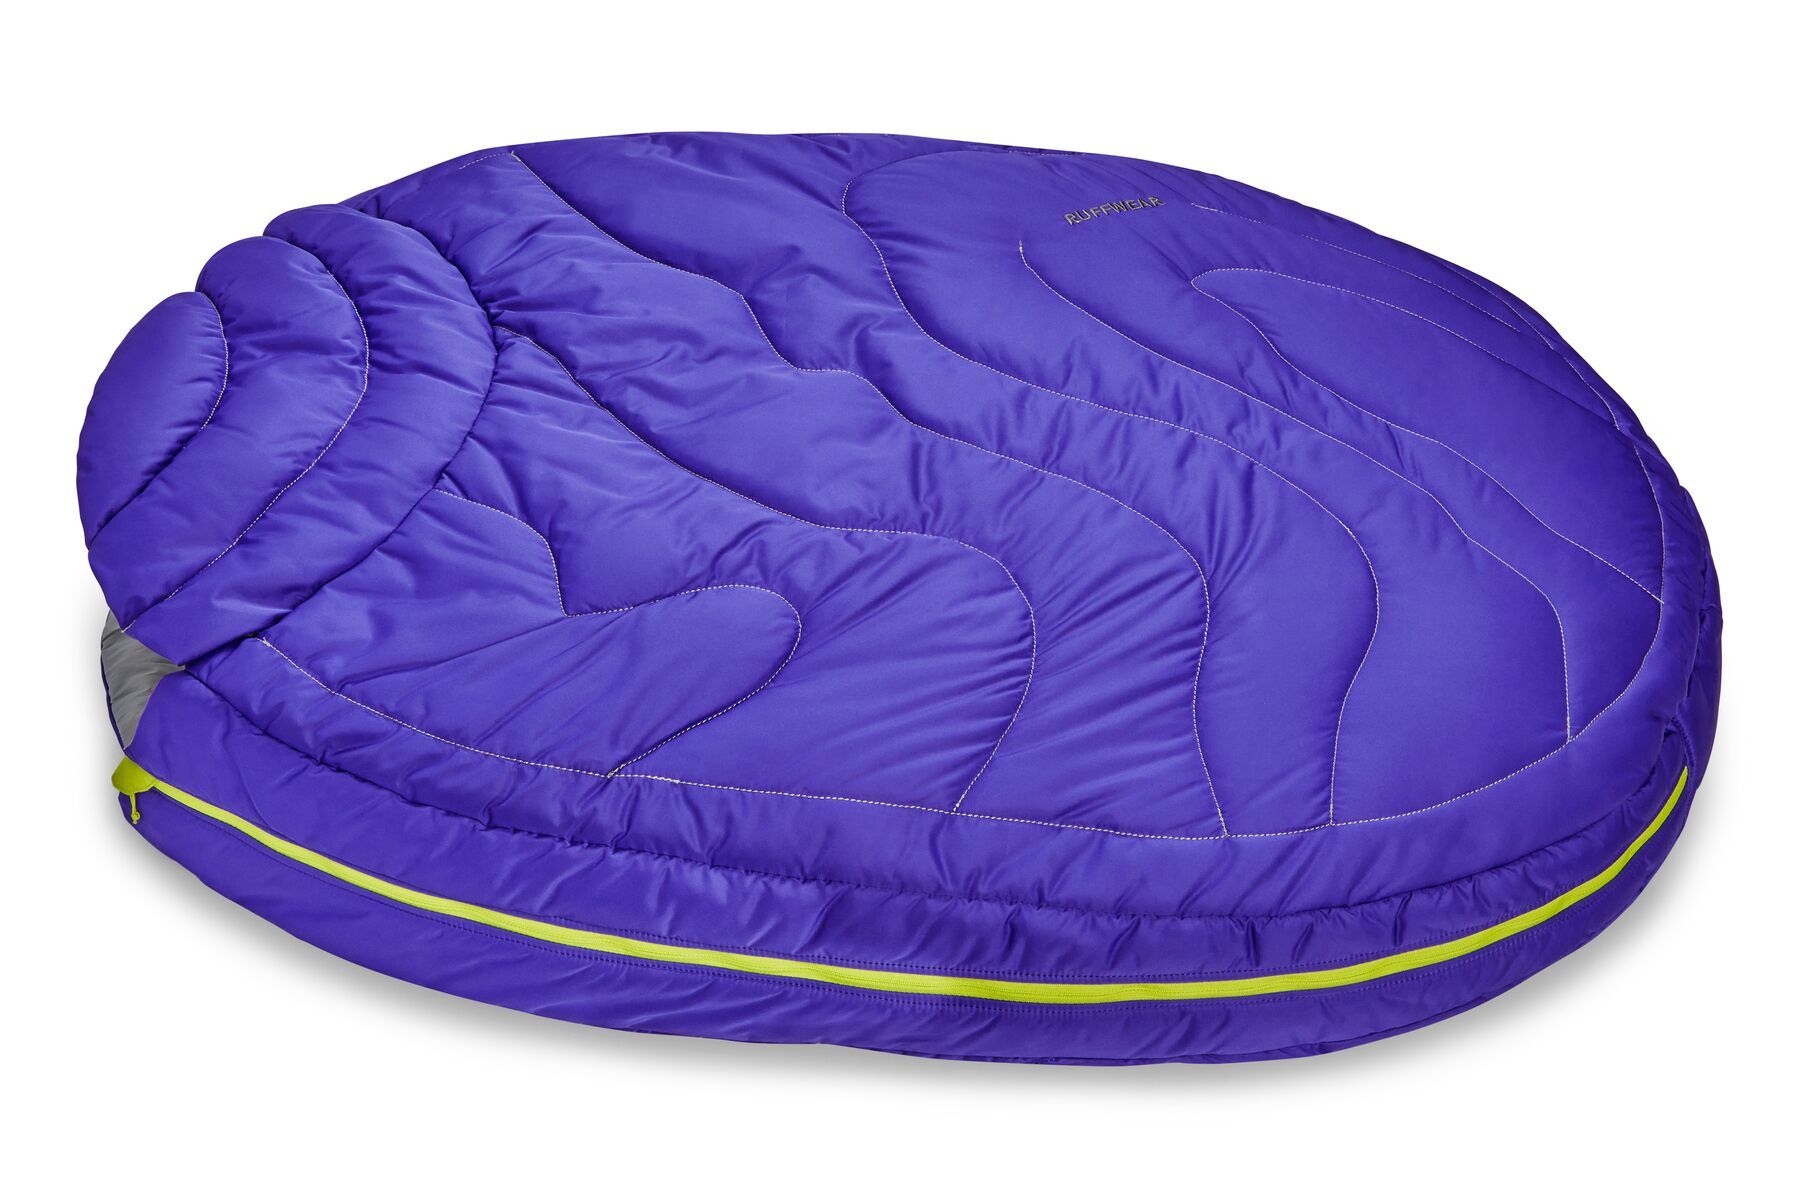 Ruffwear Highlands™ Lightweight Dog Sleeping Bag Bed